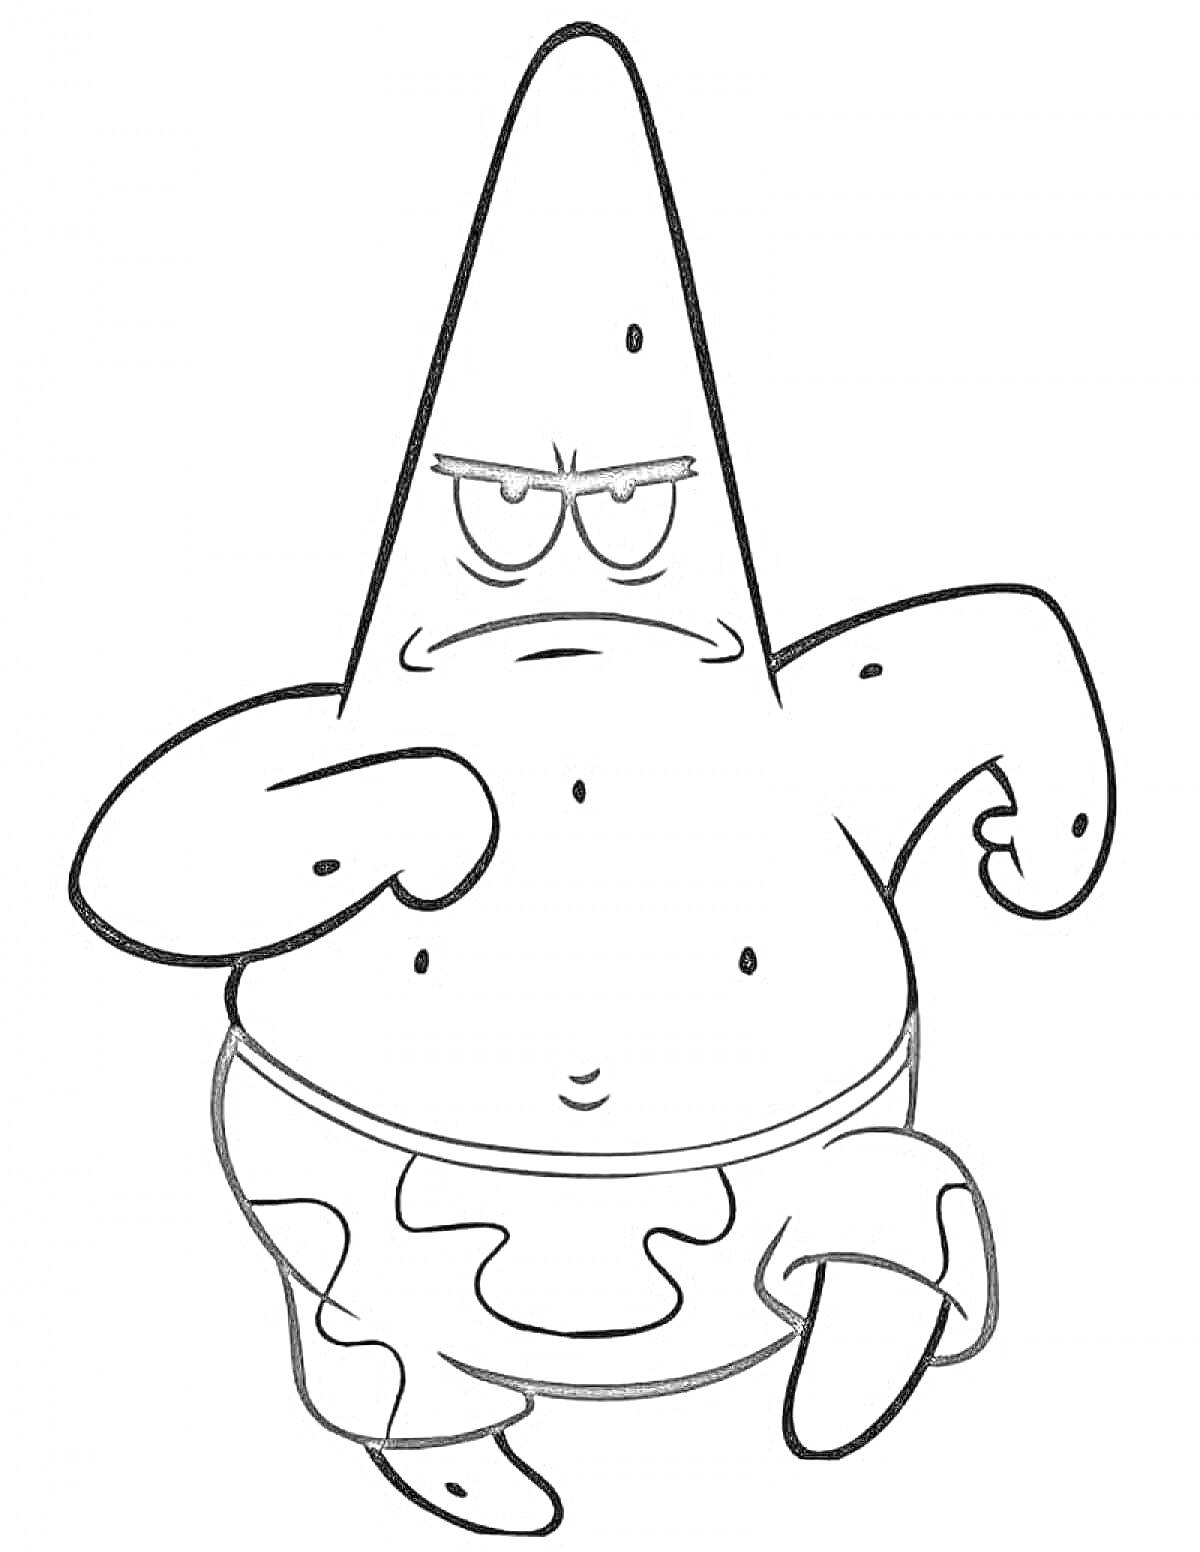 Раскраска Патрик из мультфильма в шортах с камуфляжным узором в боевой стойке